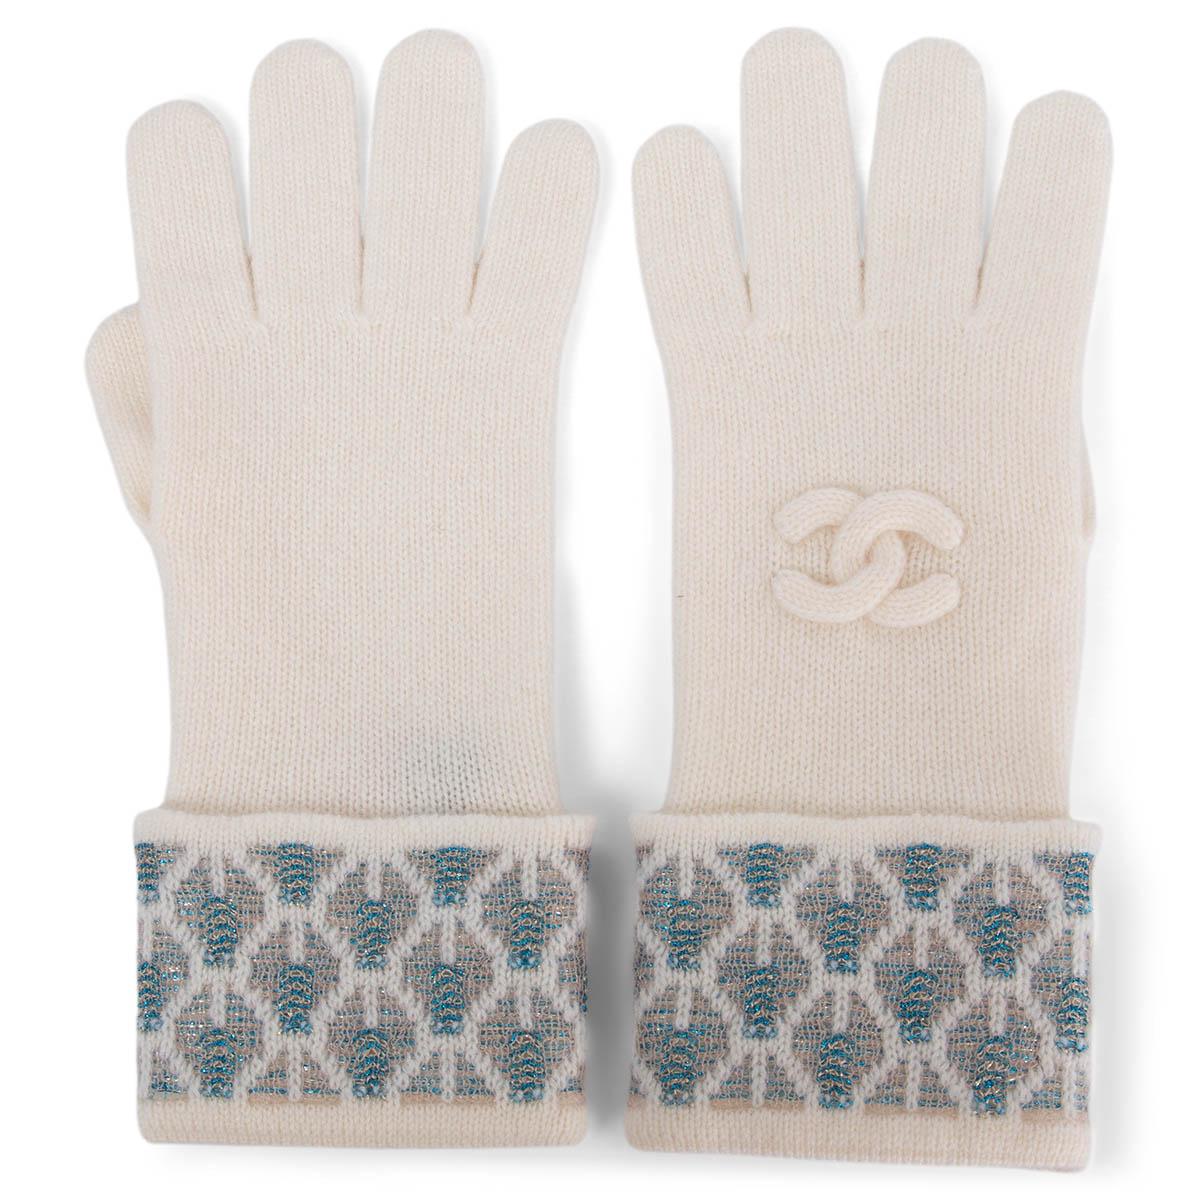 CHANEL white & blue cashmere LUREX KNIT Gloves 7